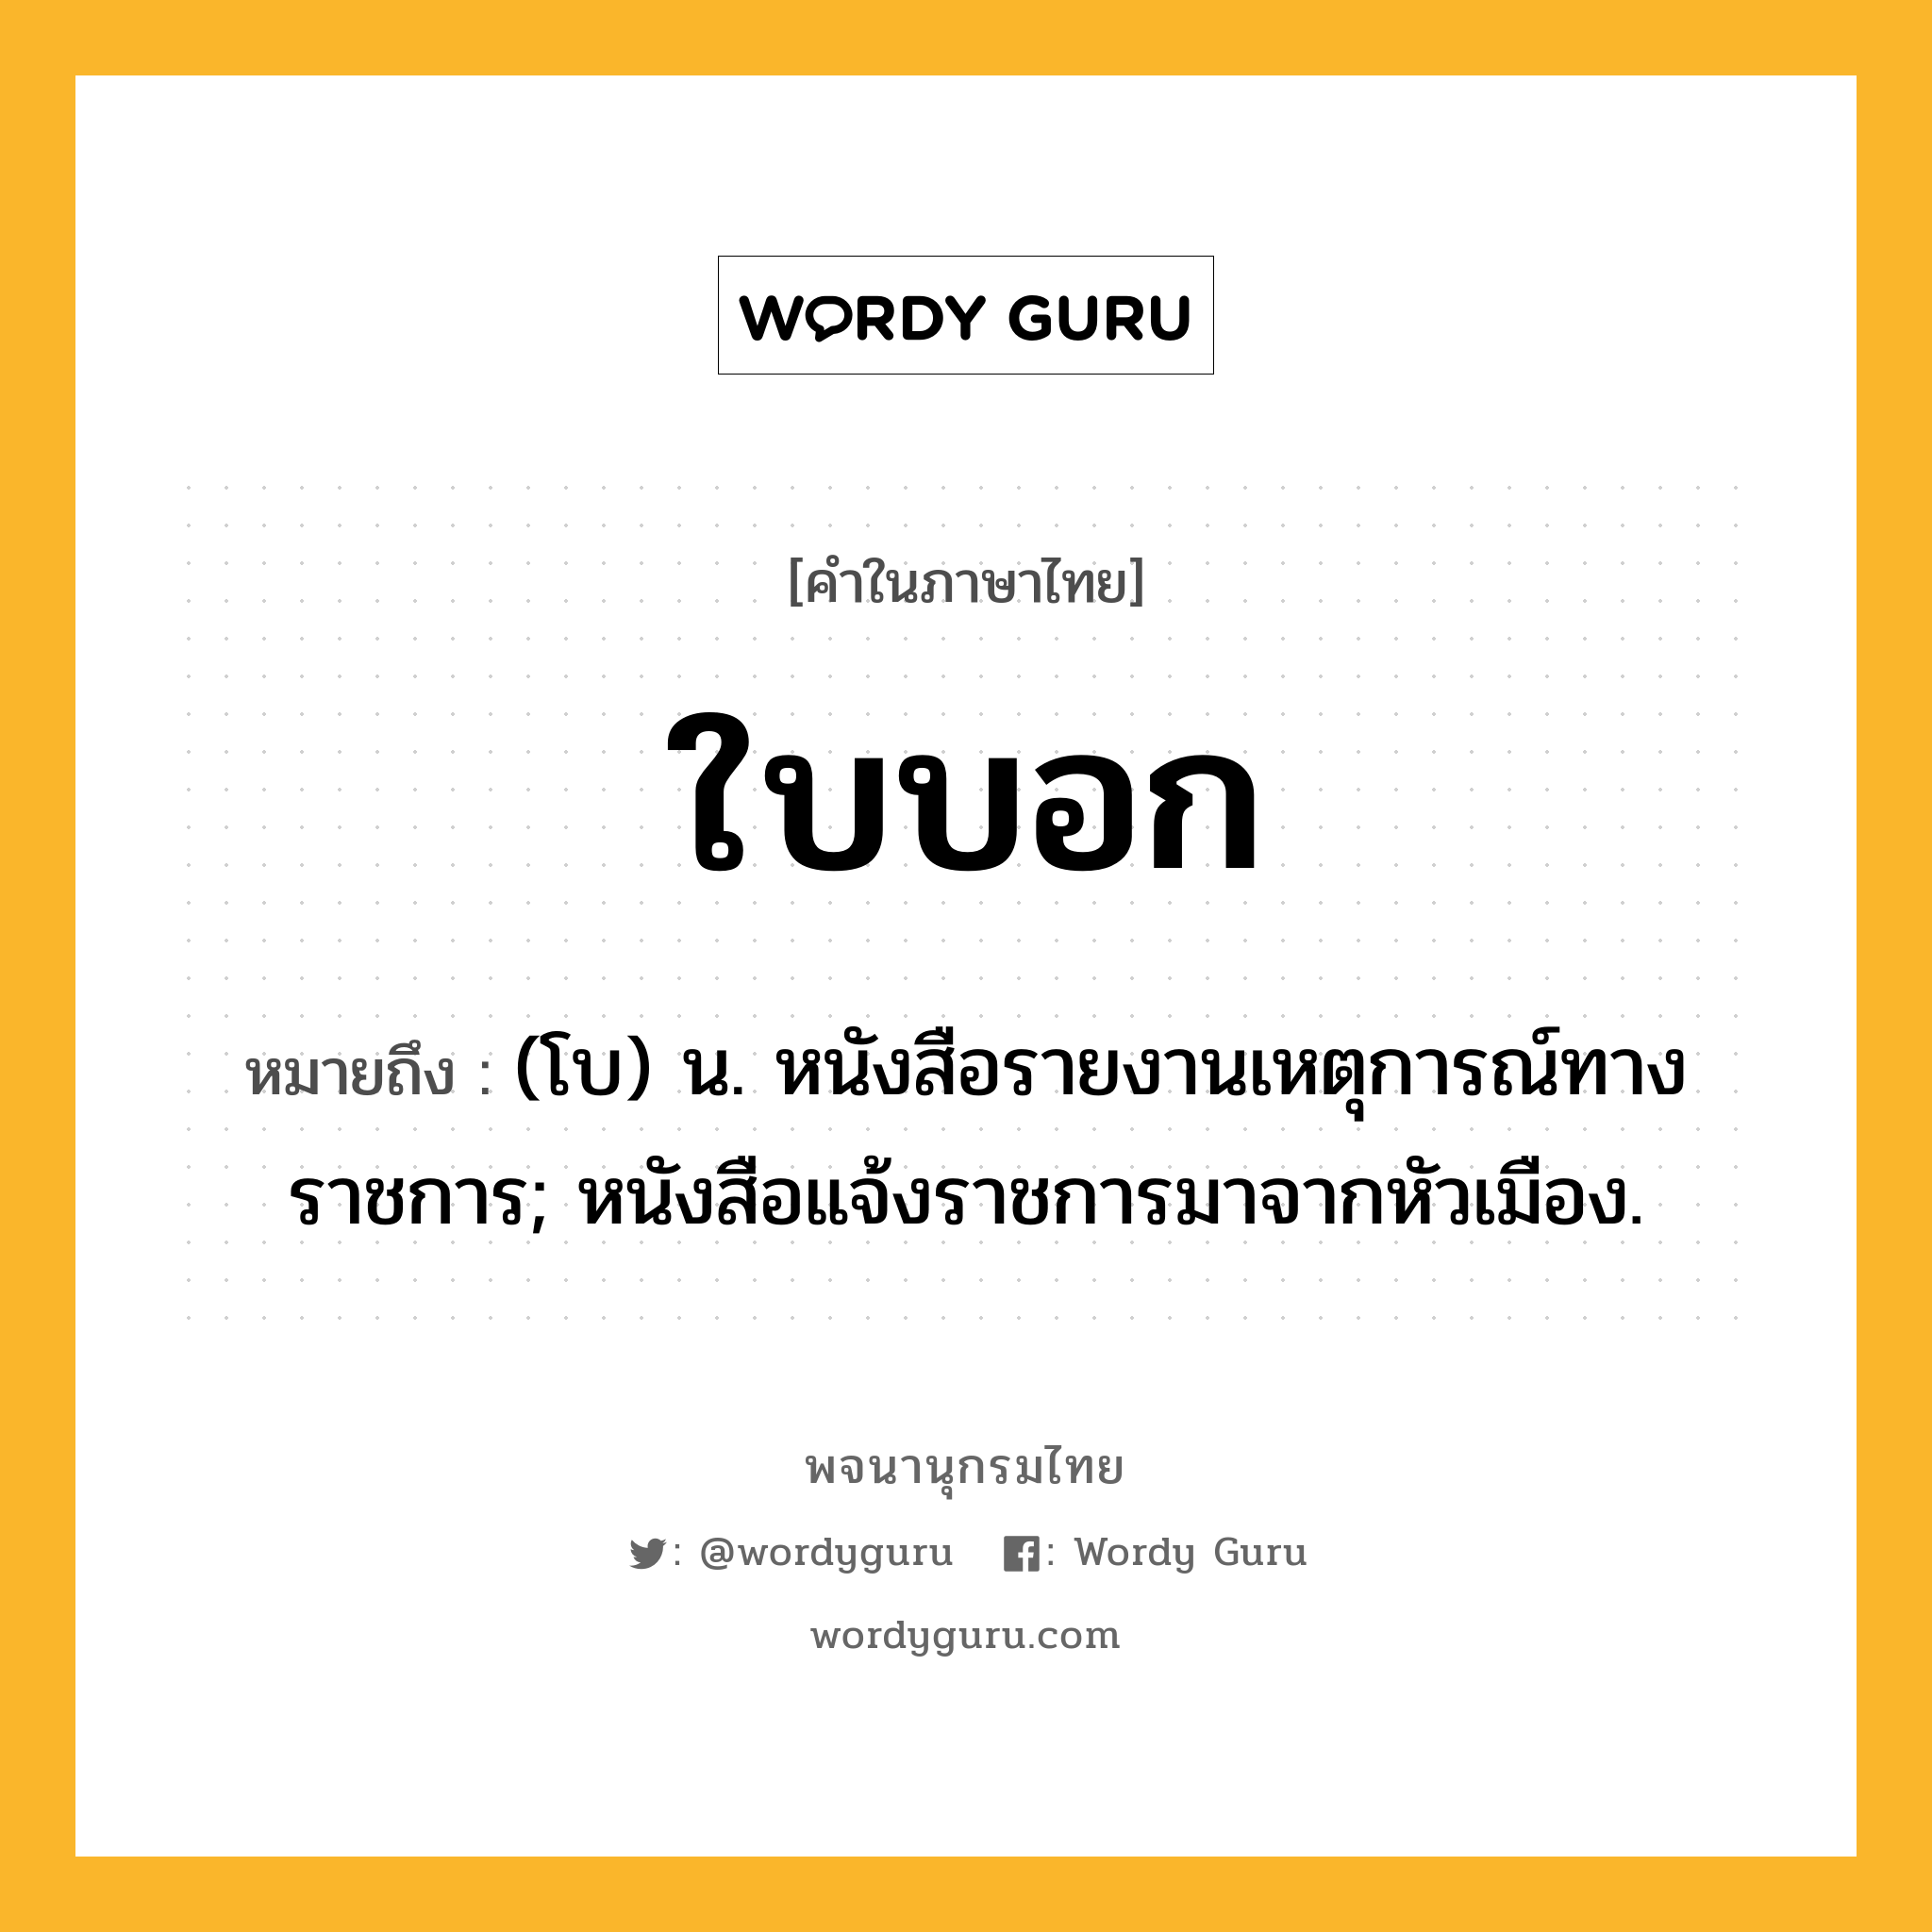 ใบบอก ความหมาย หมายถึงอะไร?, คำในภาษาไทย ใบบอก หมายถึง (โบ) น. หนังสือรายงานเหตุการณ์ทางราชการ; หนังสือแจ้งราชการมาจากหัวเมือง.